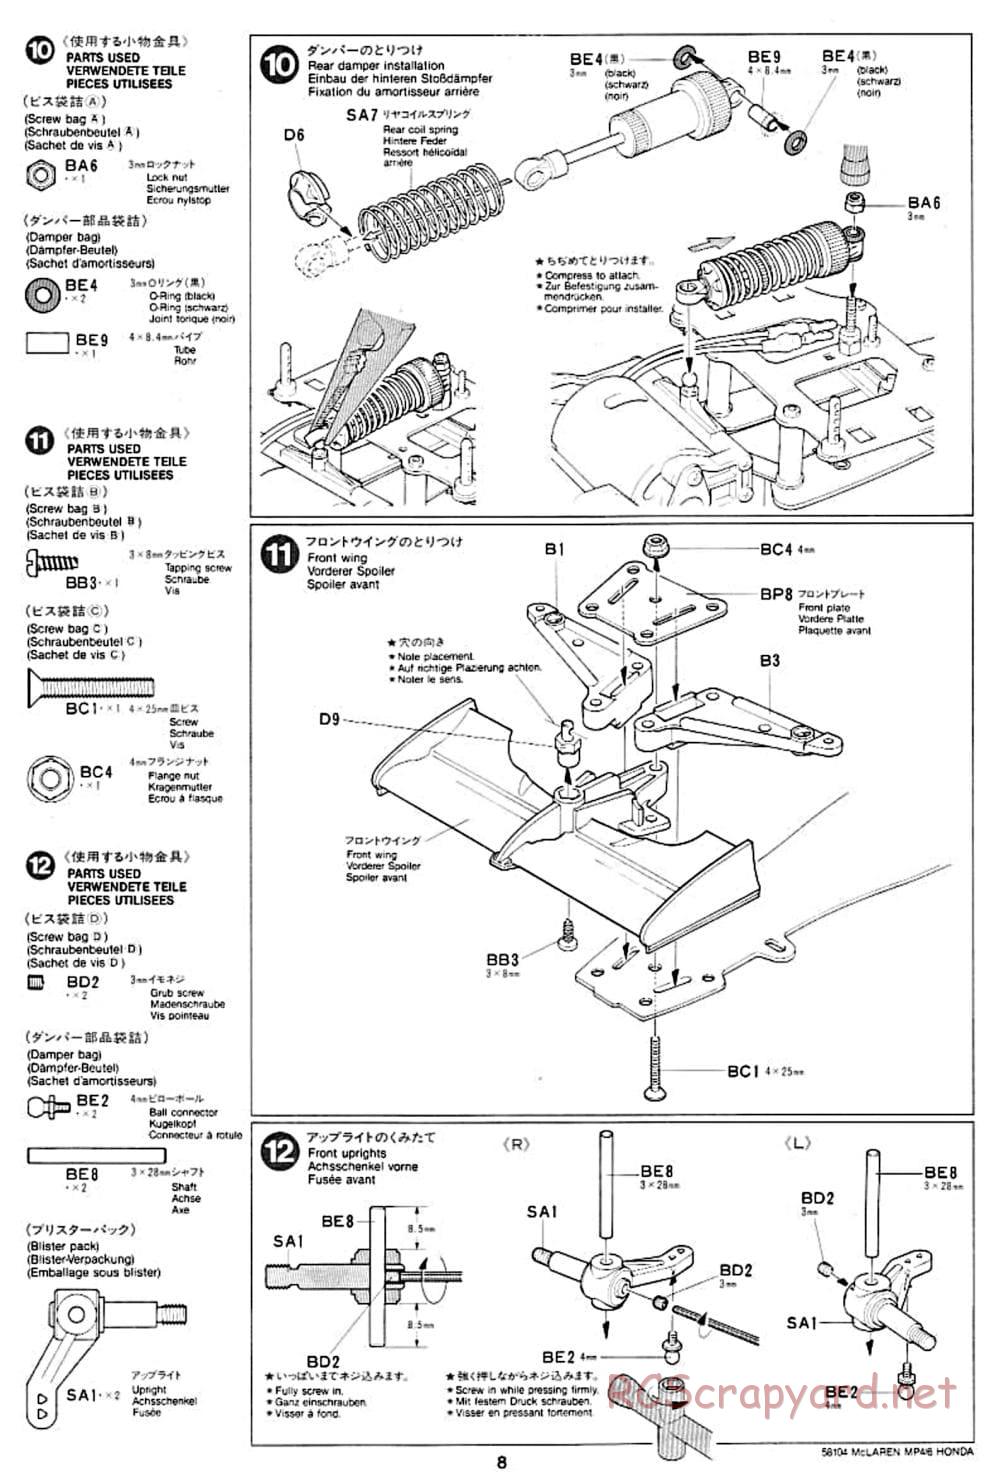 Tamiya - McLaren MP4/6 Honda - F102 Chassis - Manual - Page 8